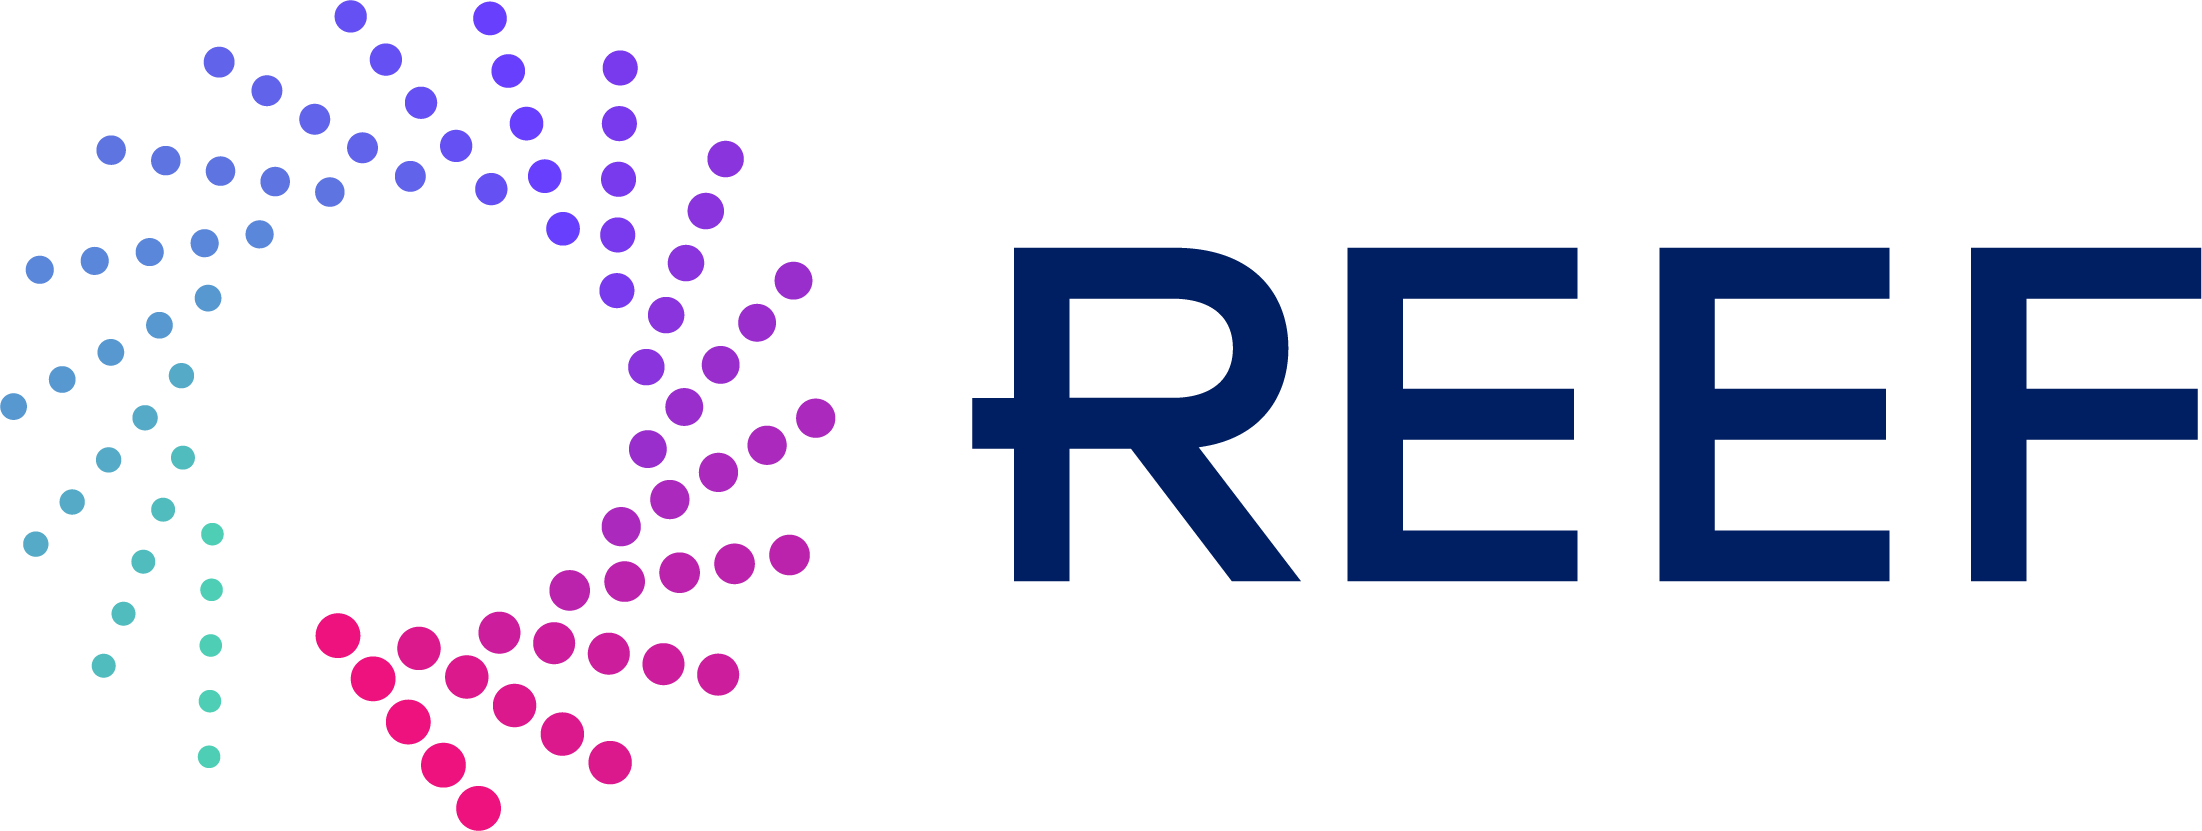 REEF logo